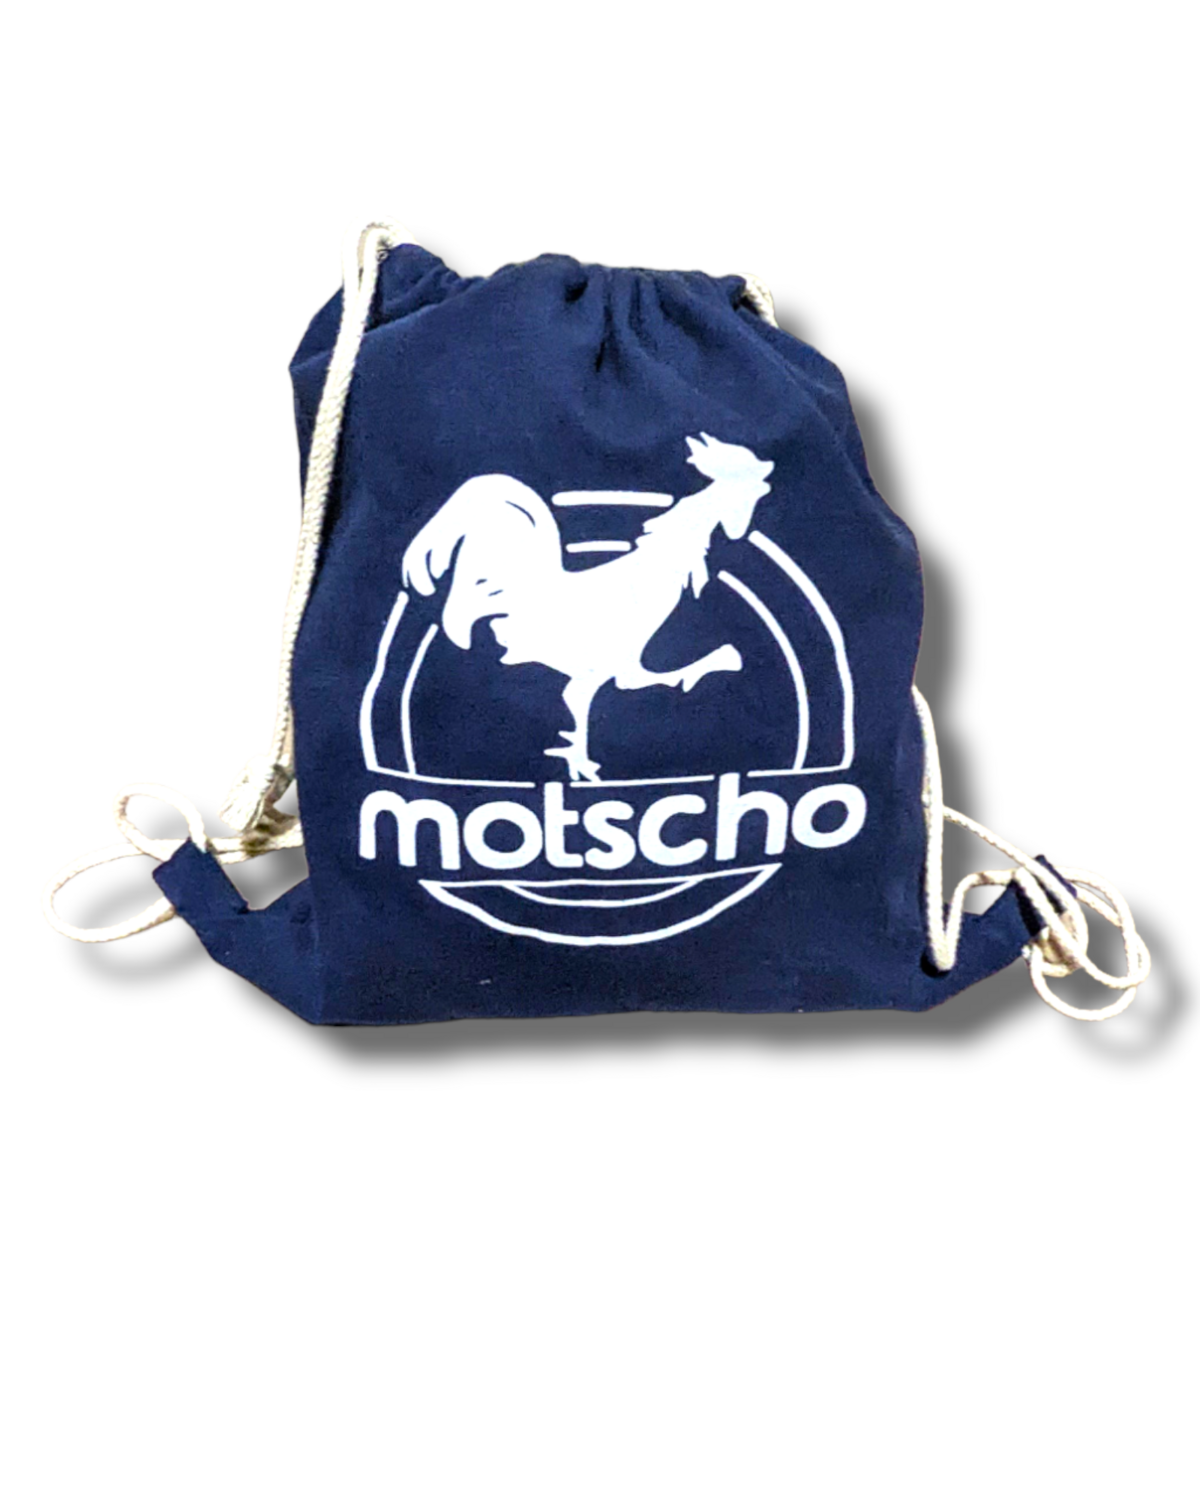 Motscho Gym Bag